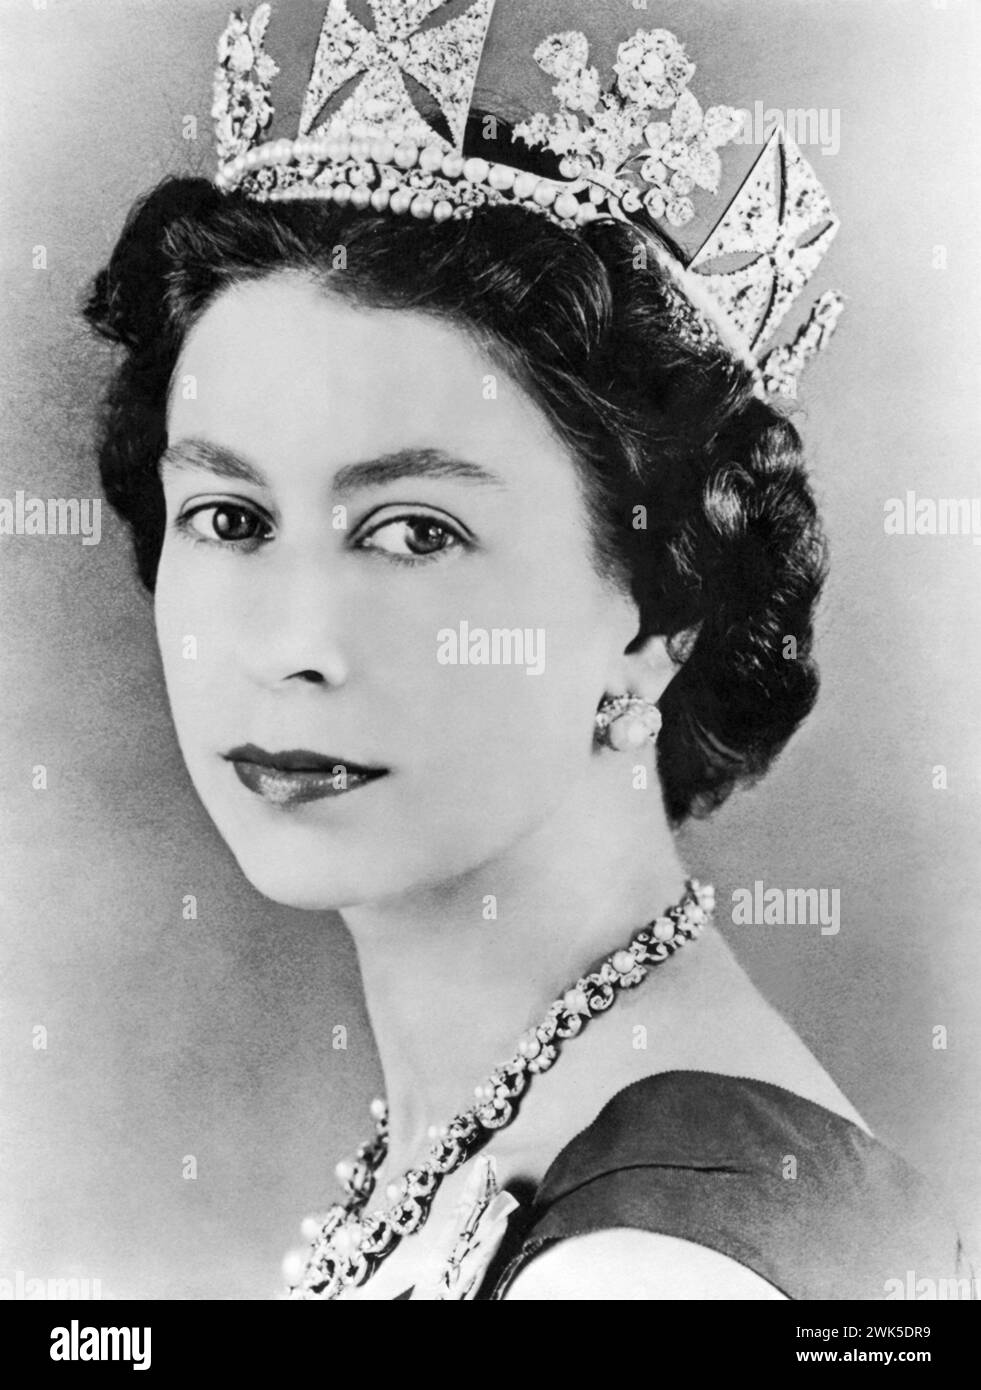 Young Queen Elizabeth II (1926-2022) on October 10, 1957. Stock Photo